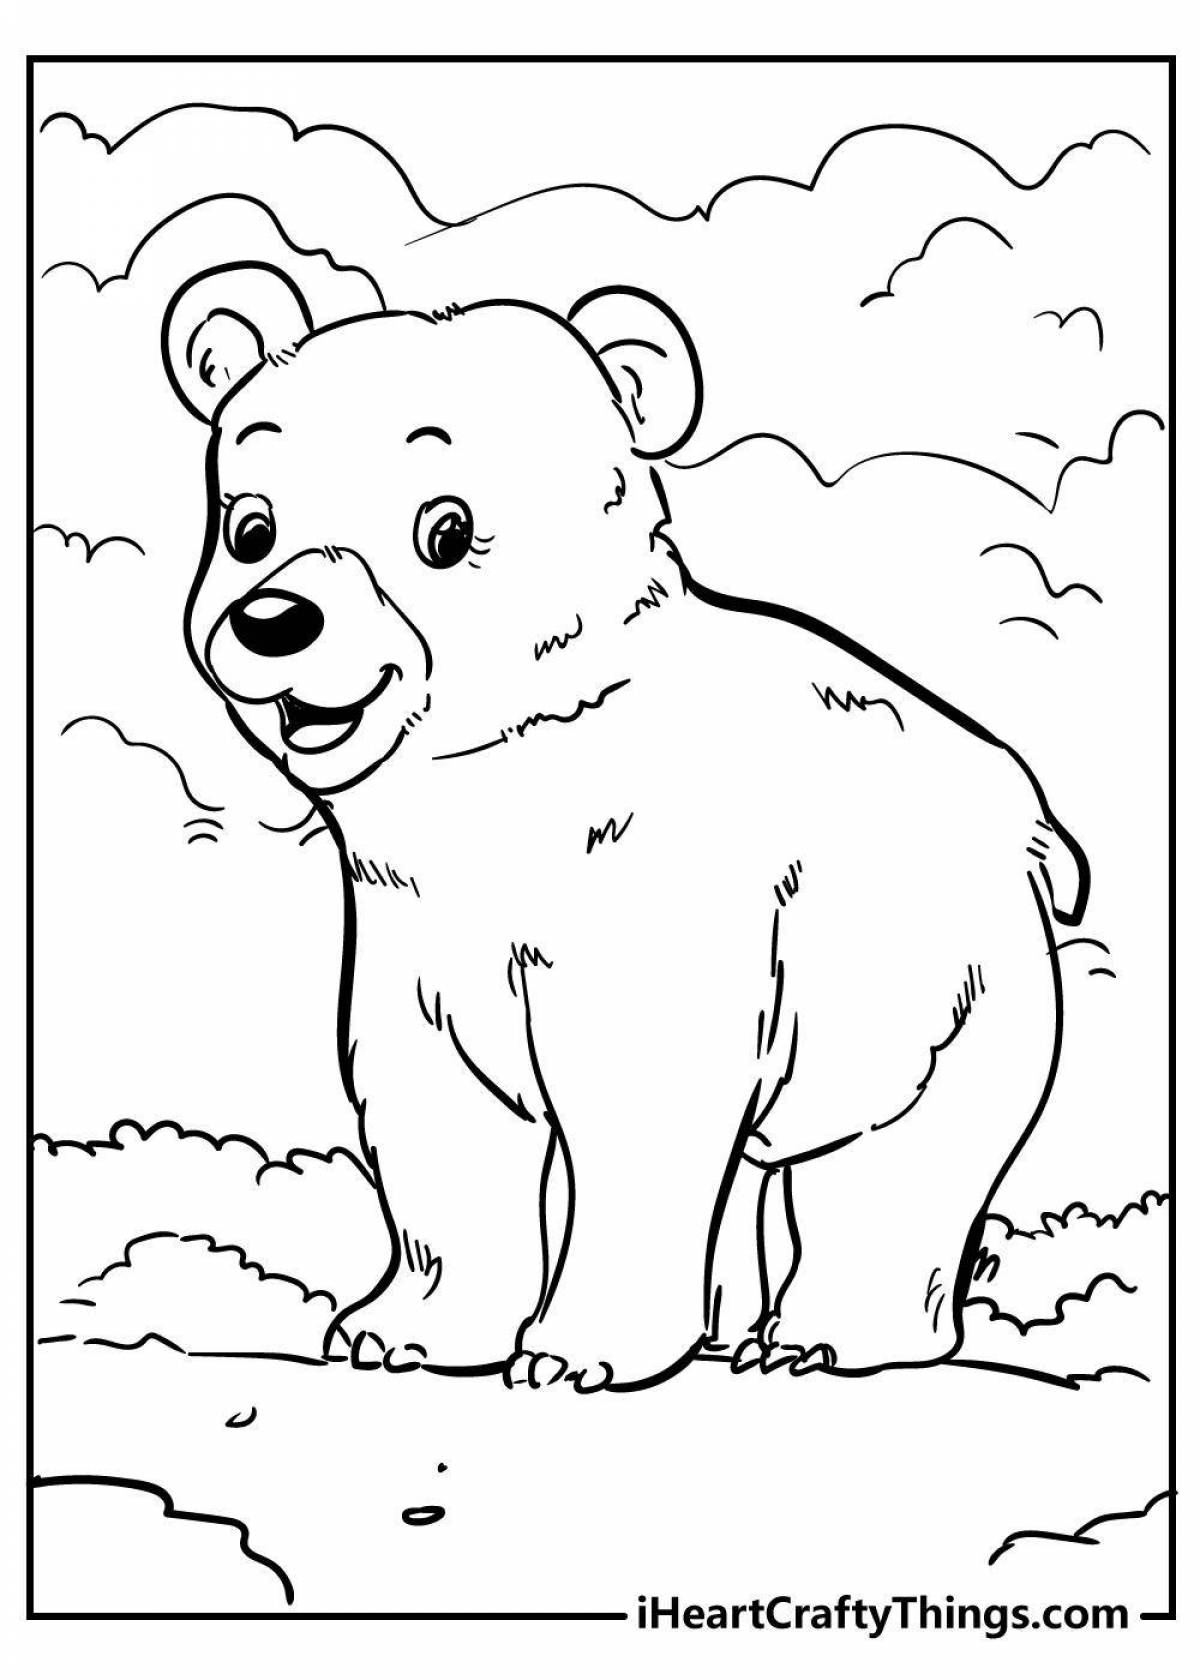 Раскраска очаровательный медведь для детей 2-3 лет